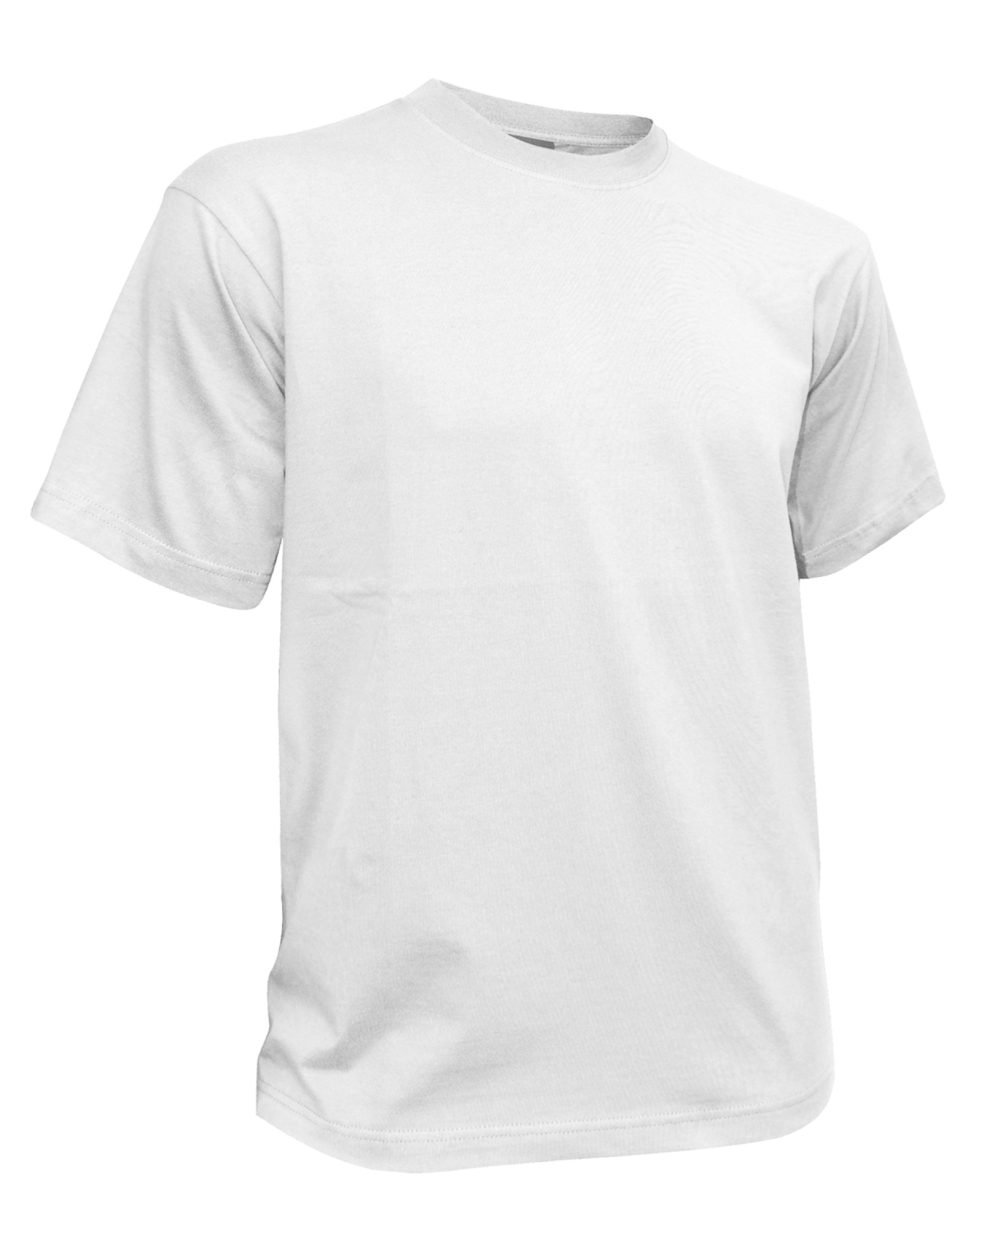 Dassy Oscar T-Shirt